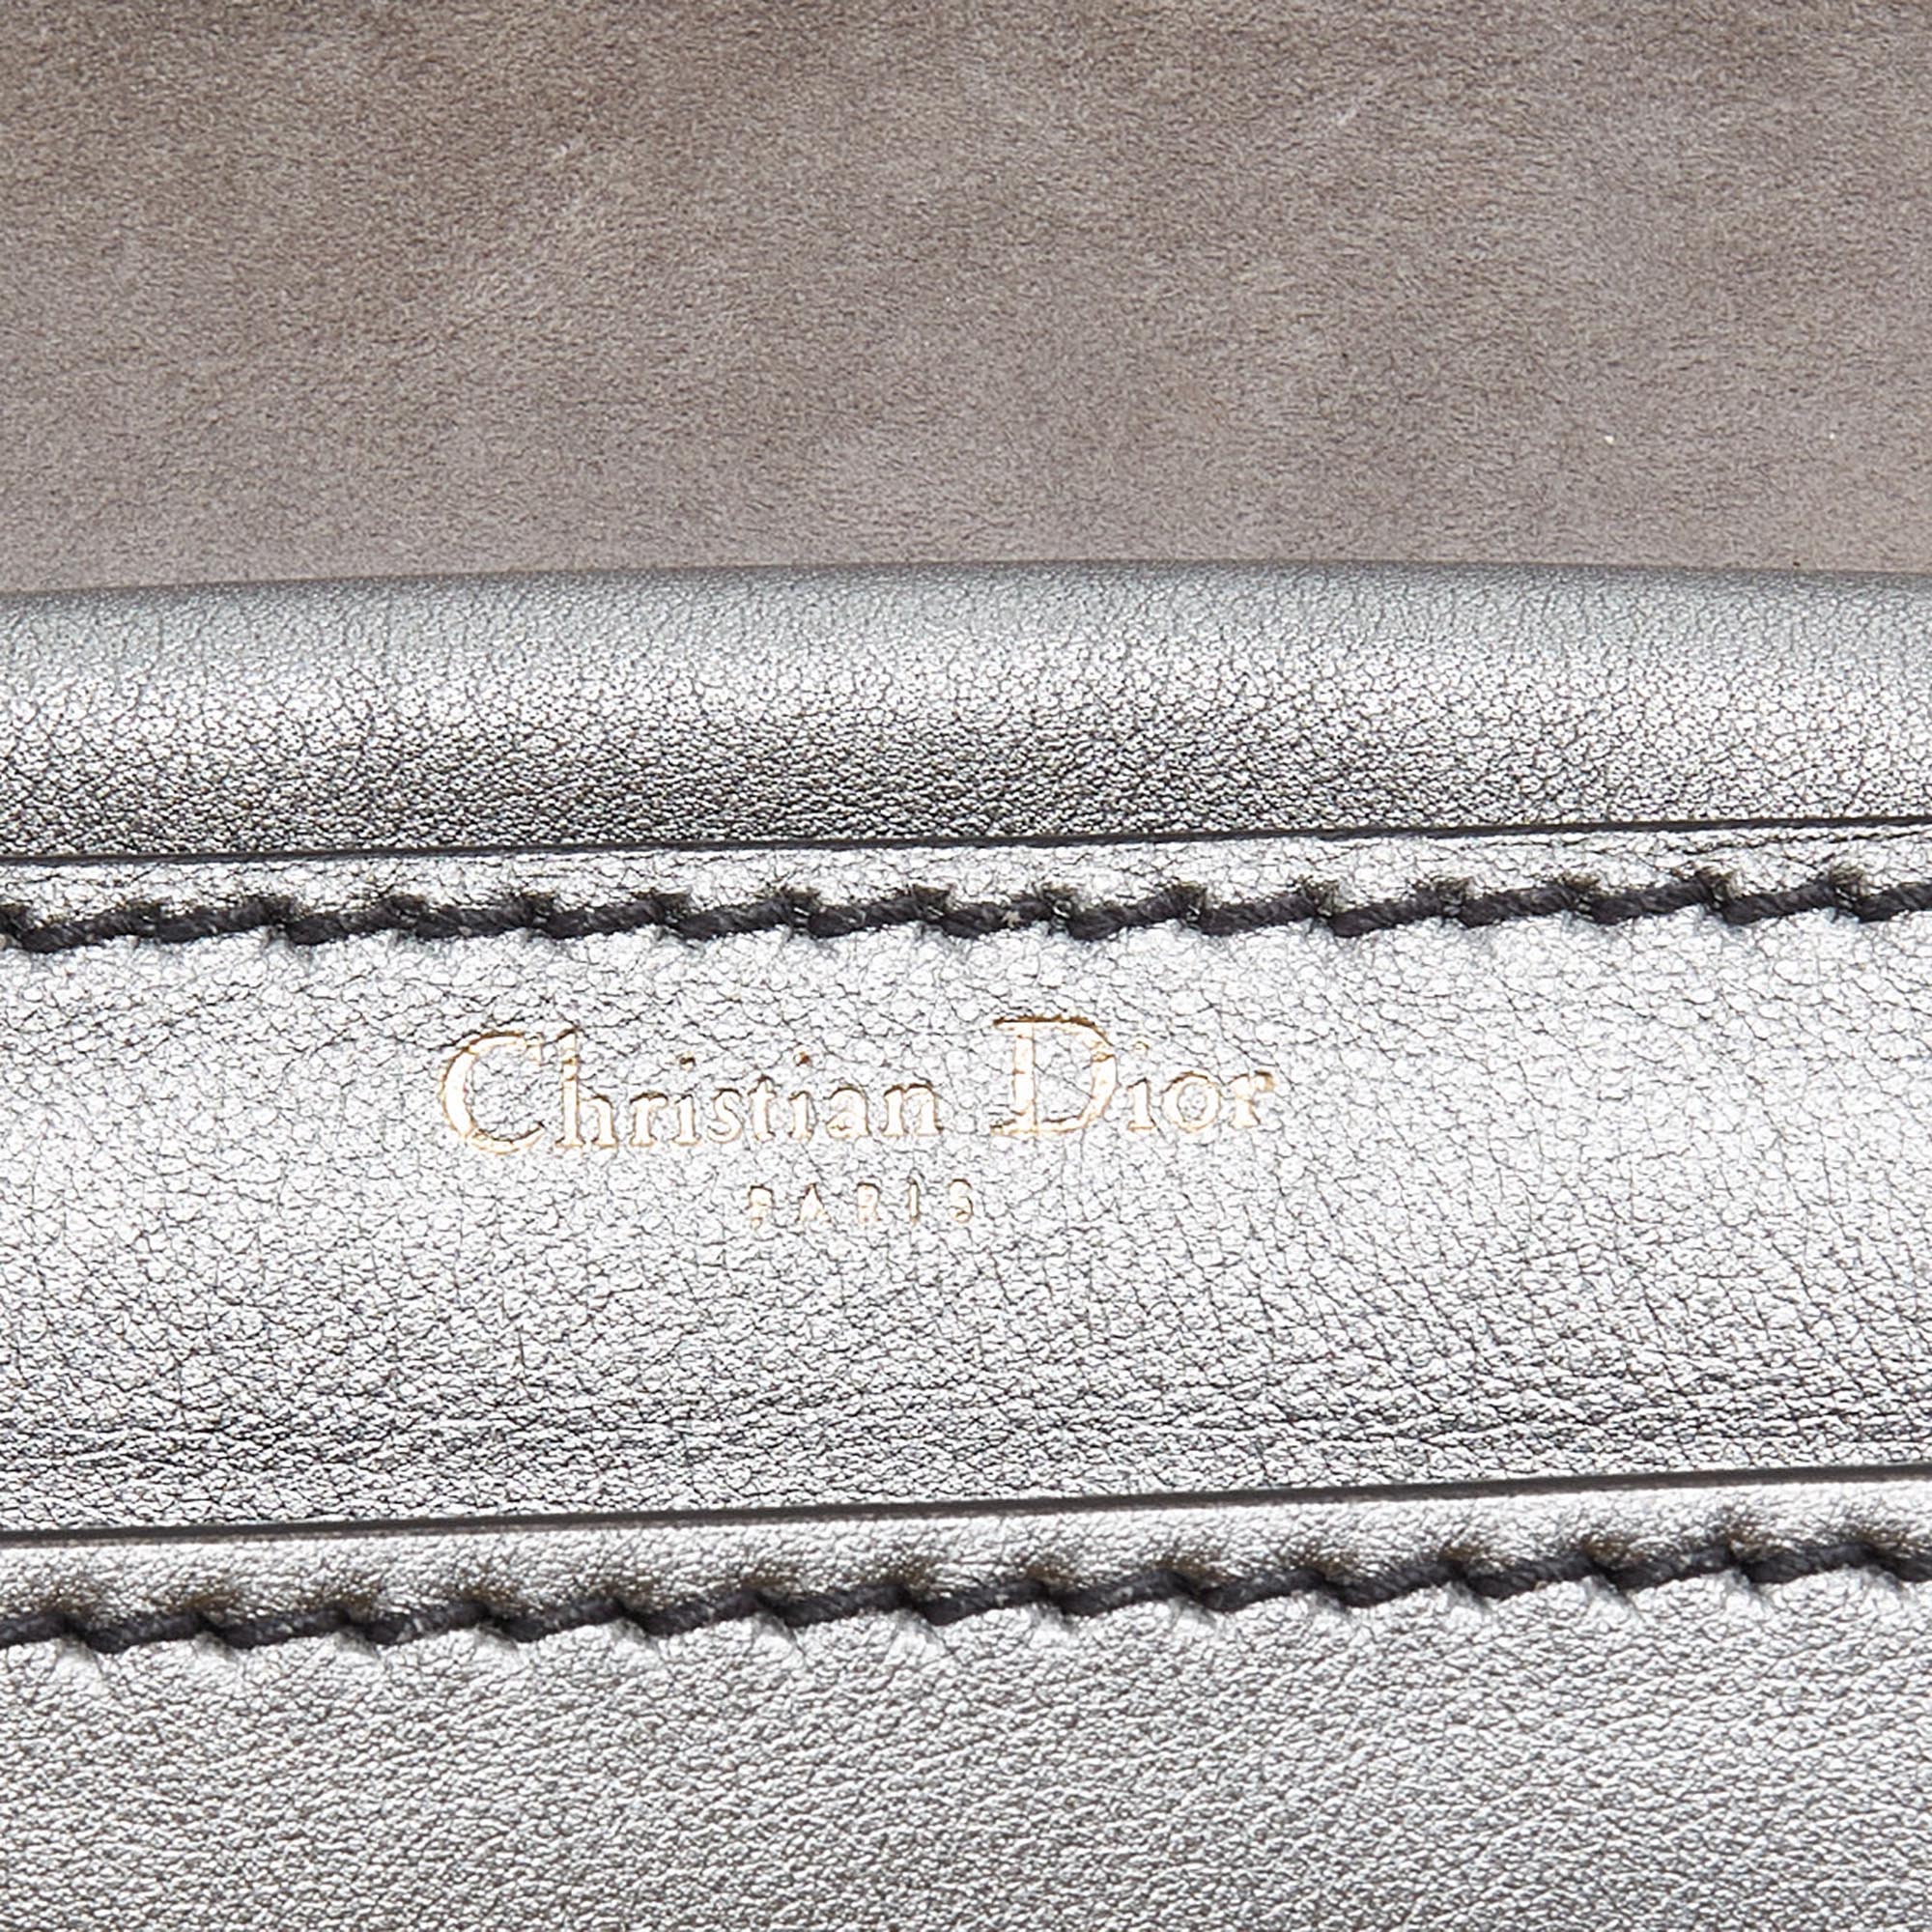 Dior Silver Leather J’adior Flap Shoulder Bag